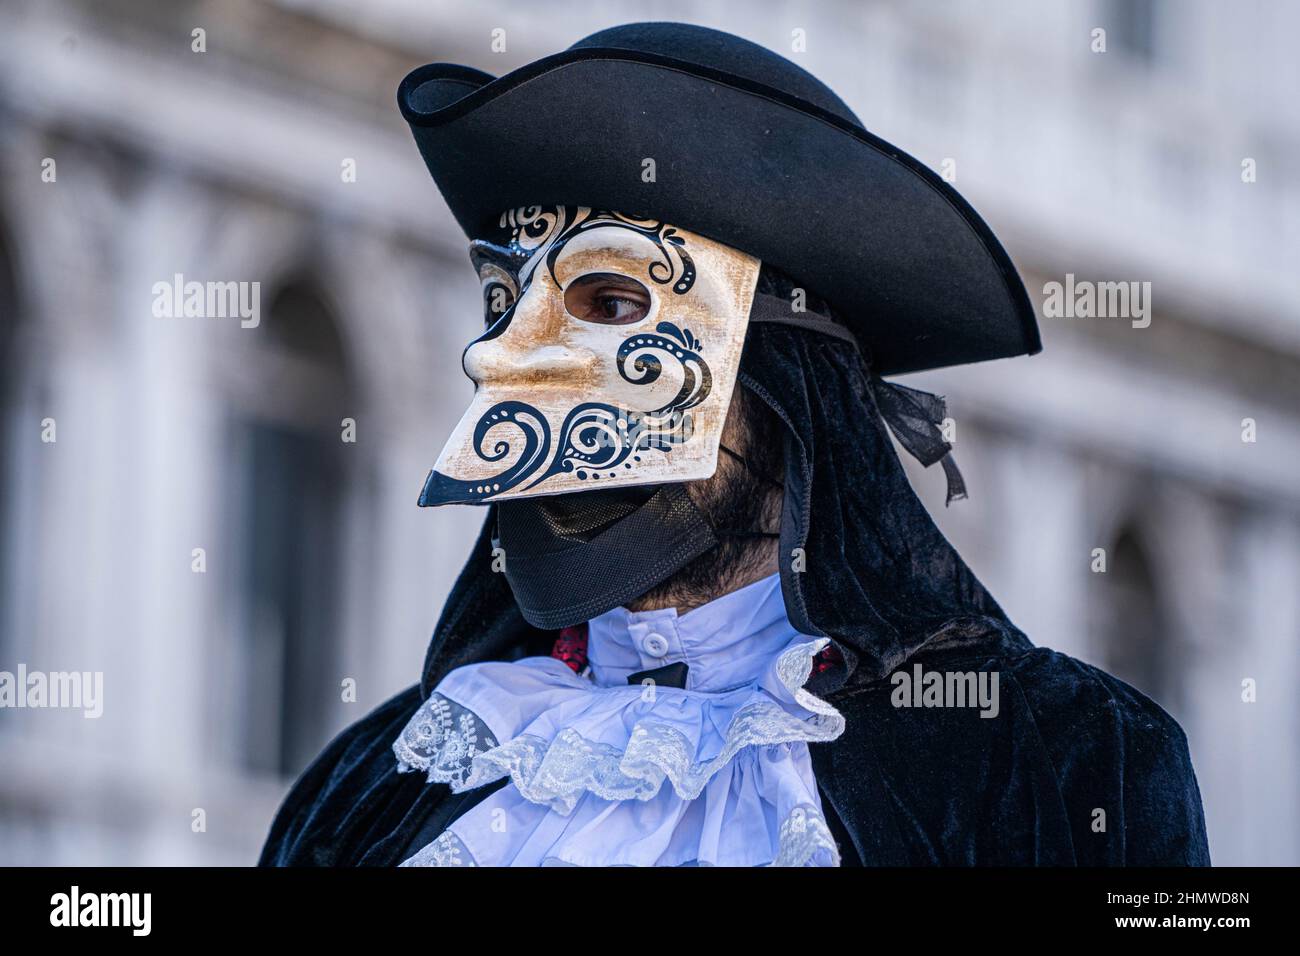 Máscara Veneciana para Hombre, Bauta Casanova, Máscara de Carnaval, Máscara  de Halloween -  México